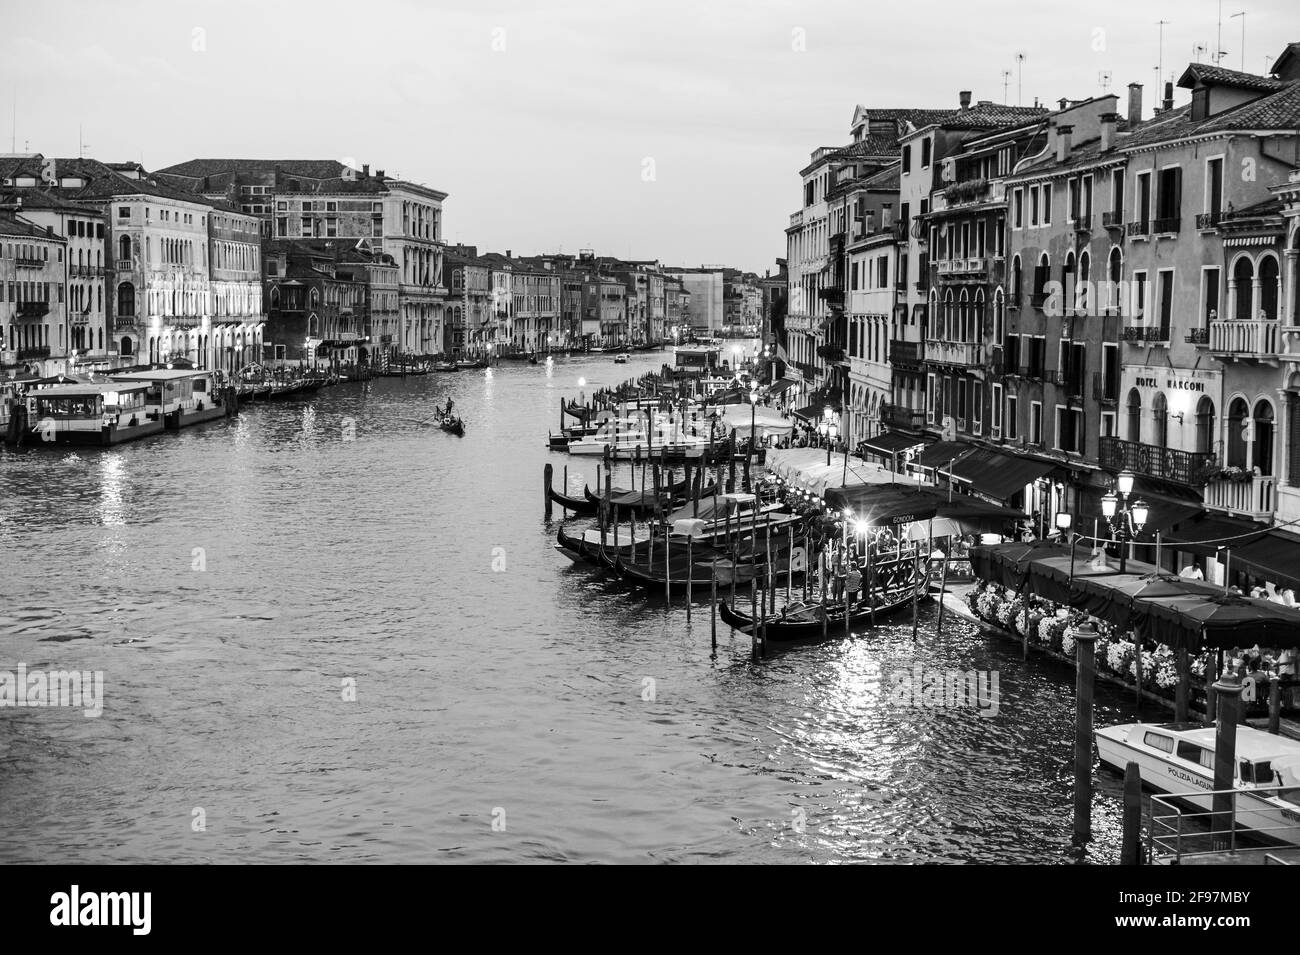 Canale Grande in Venedig, Italien - eine wunderschöne Wasserstraße mit Taxibooten und Gondeln. Aufgenommen mit Leica M monochrom Stockfoto